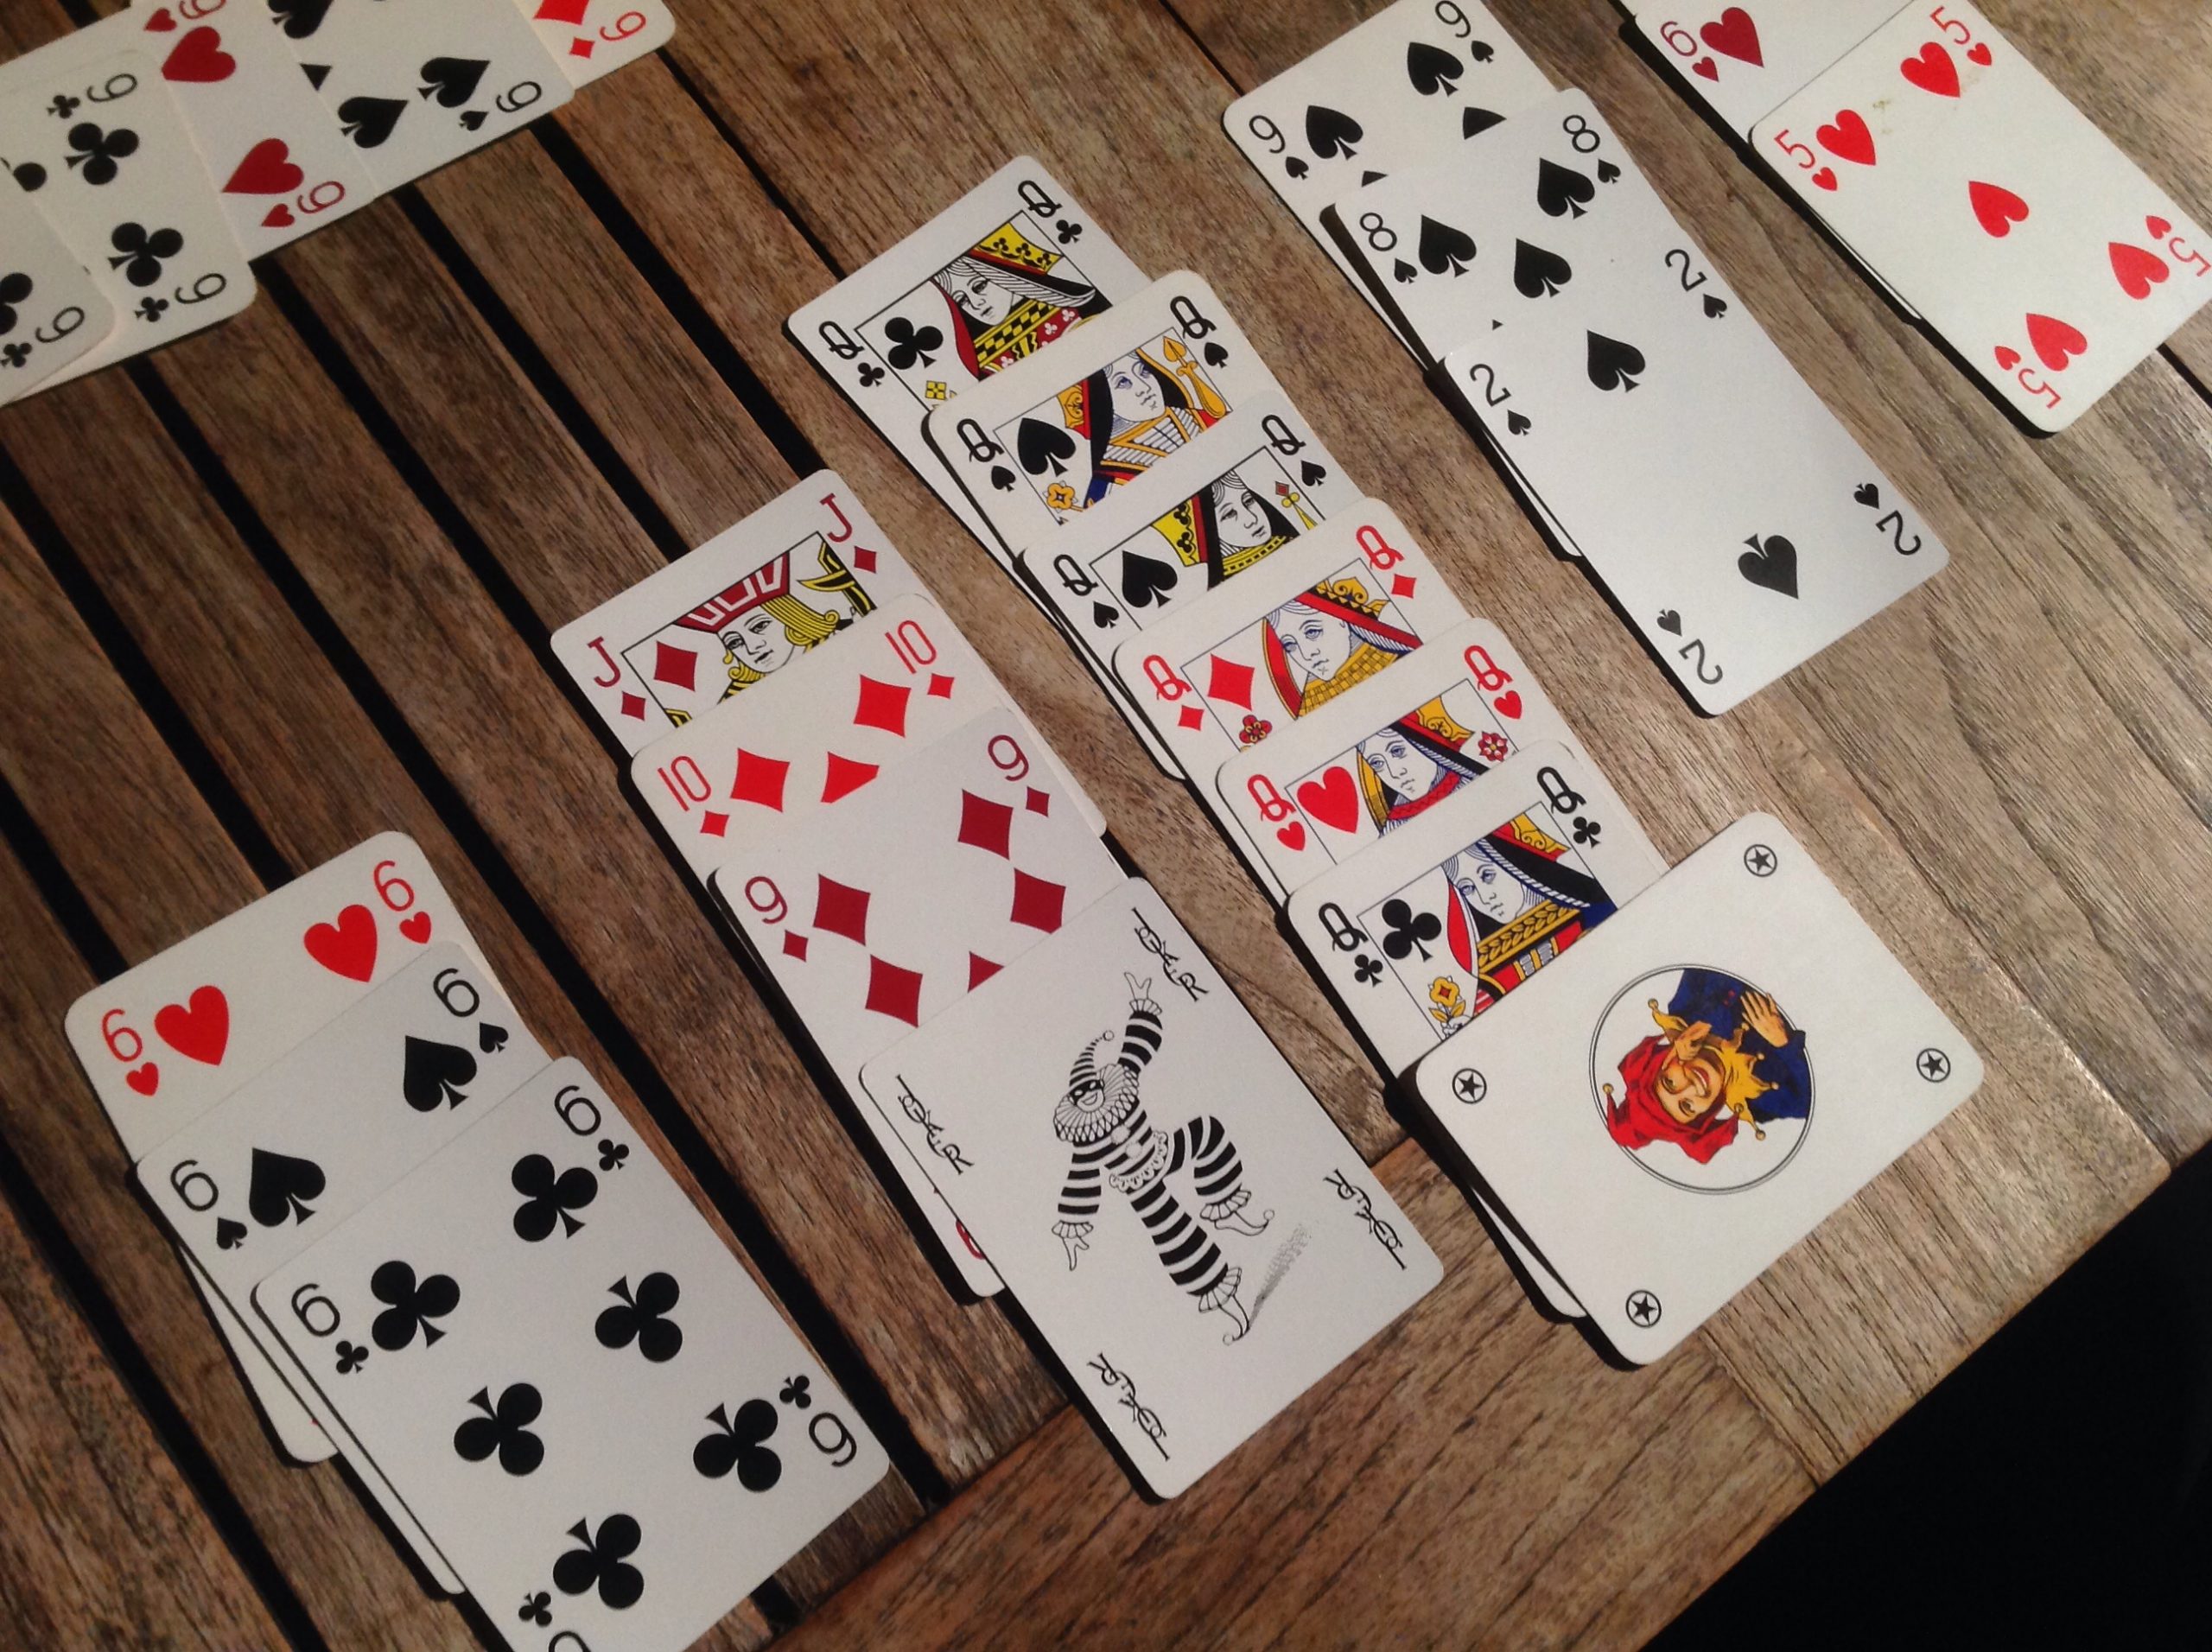 Il burraco è un gioco di carte molto praticato in Toscana